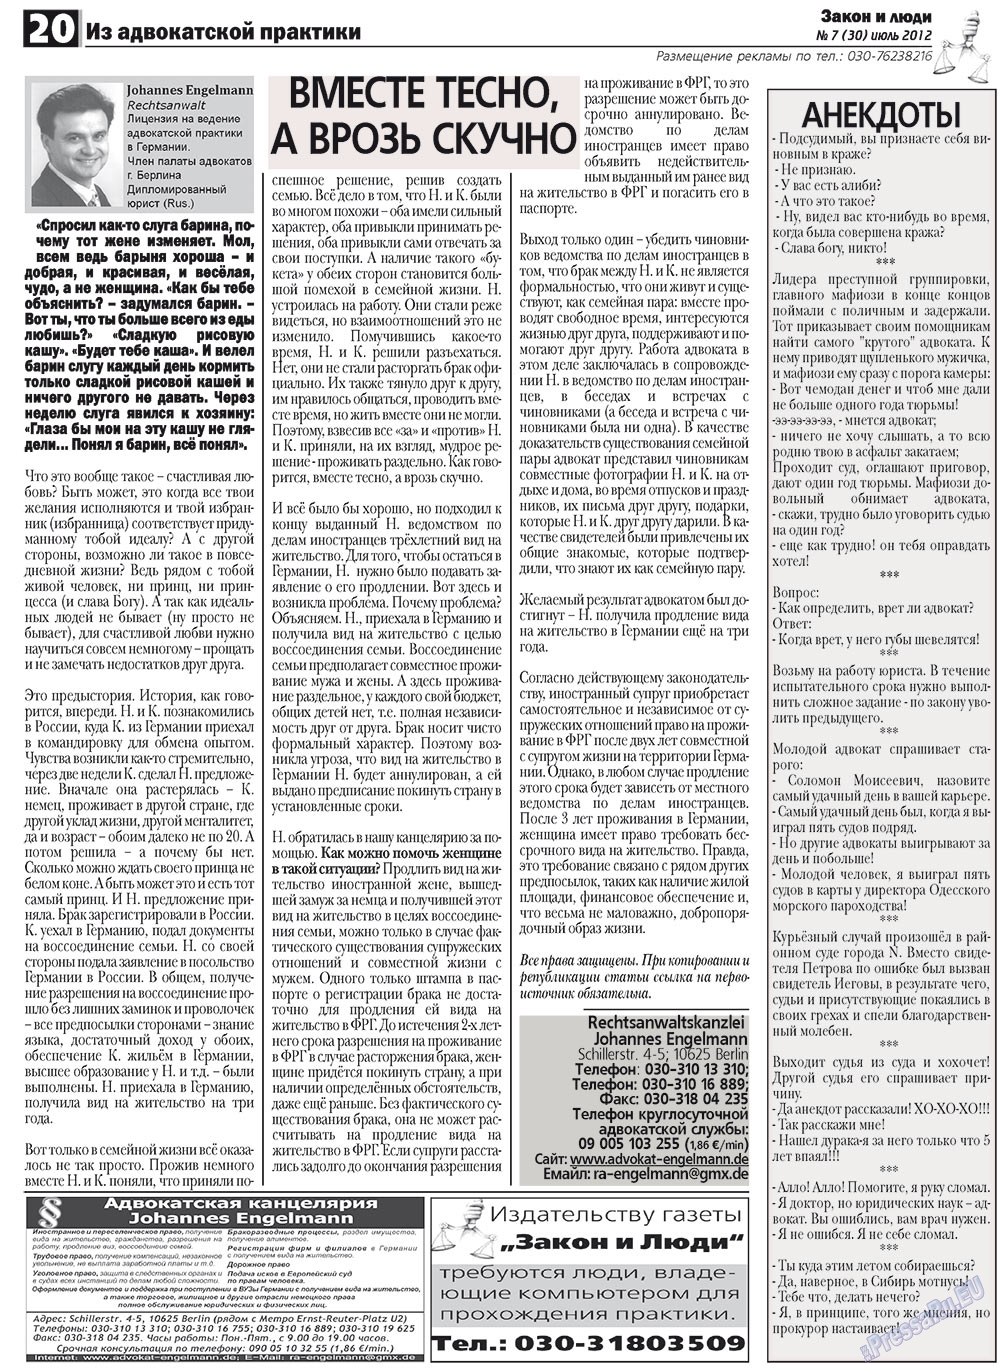 Закон и люди, газета. 2012 №7 стр.20